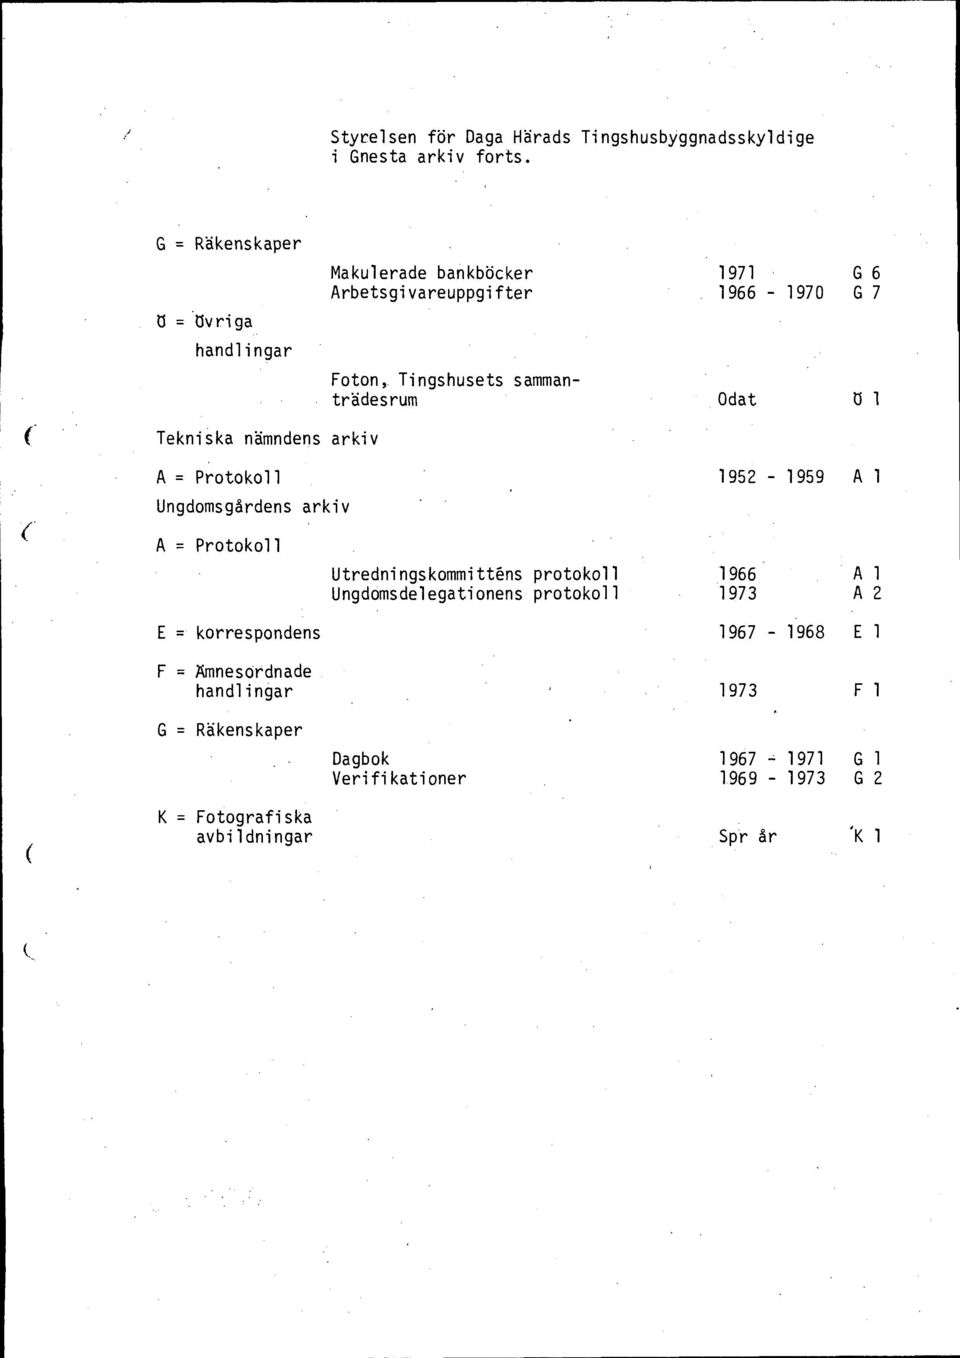 Odat U 1 Tekniska nämndens arkiv 1952-1959 A 1 Ungdomsgårdens arkiv Utredningskommittks protokoll 1966 Al